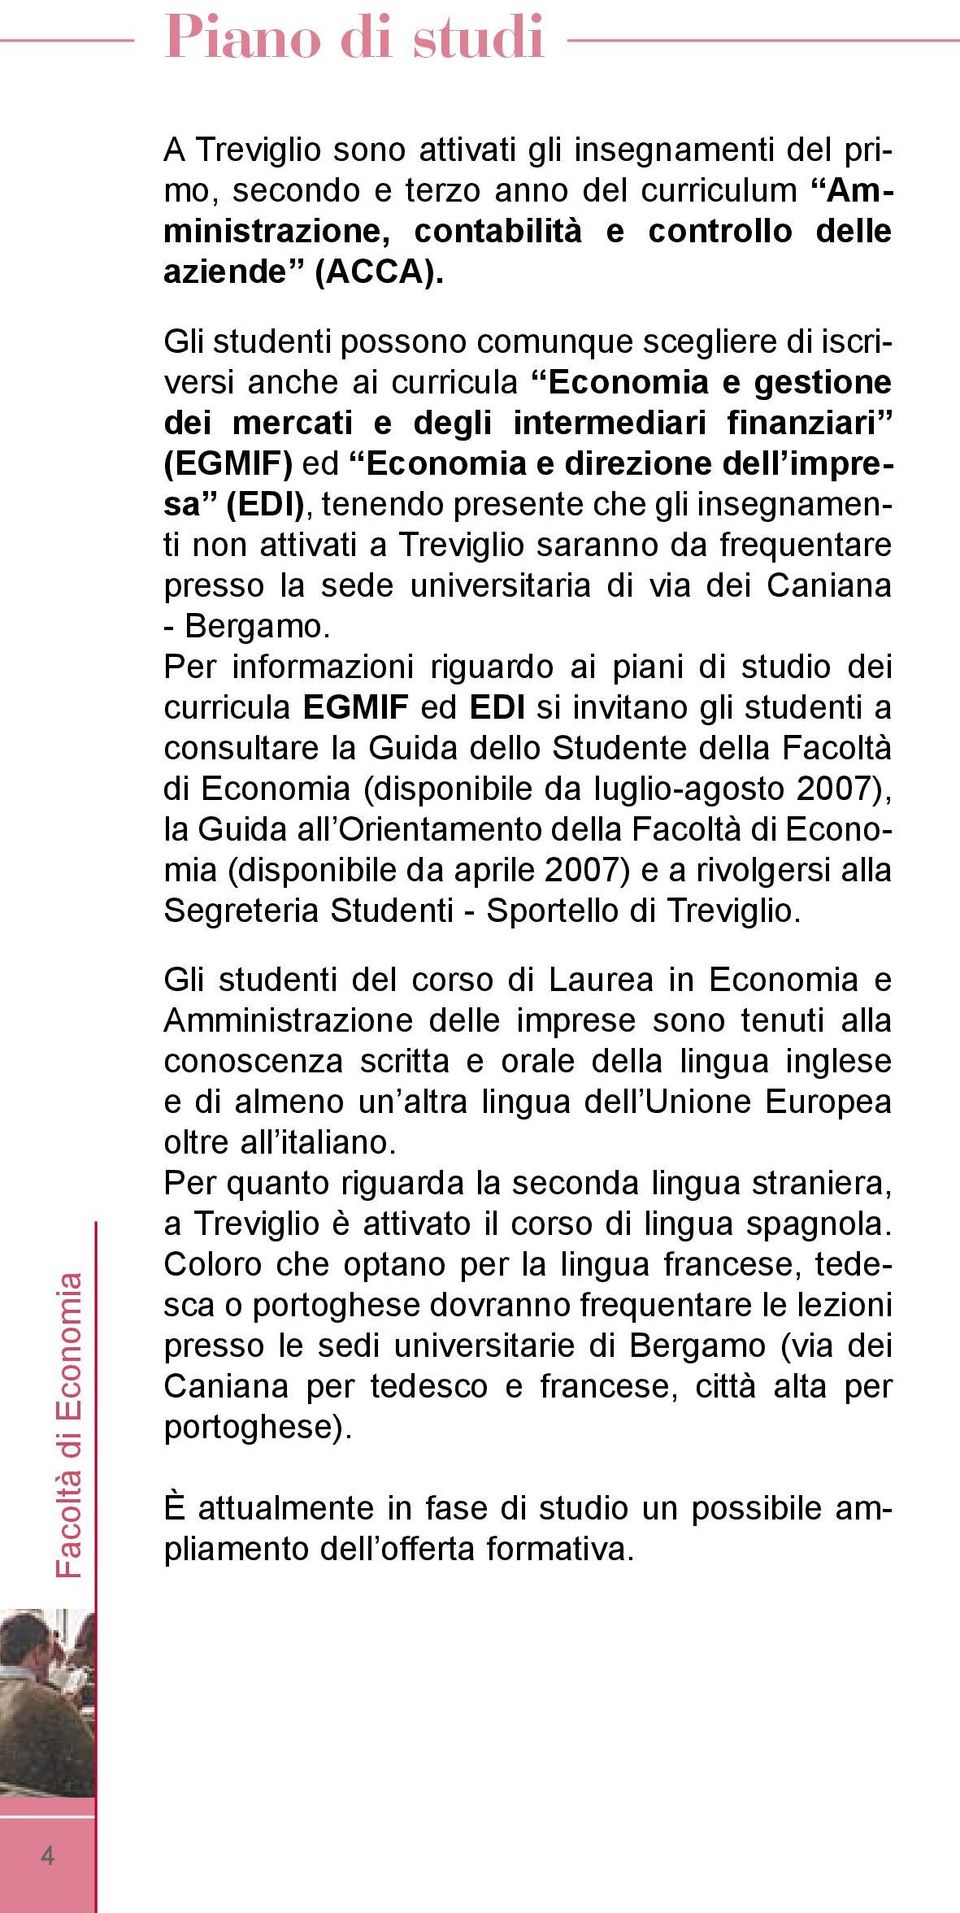 presente che gli insegnamenti non attivati a Treviglio saranno da frequentare presso la sede universitaria di via dei Caniana - Bergamo.